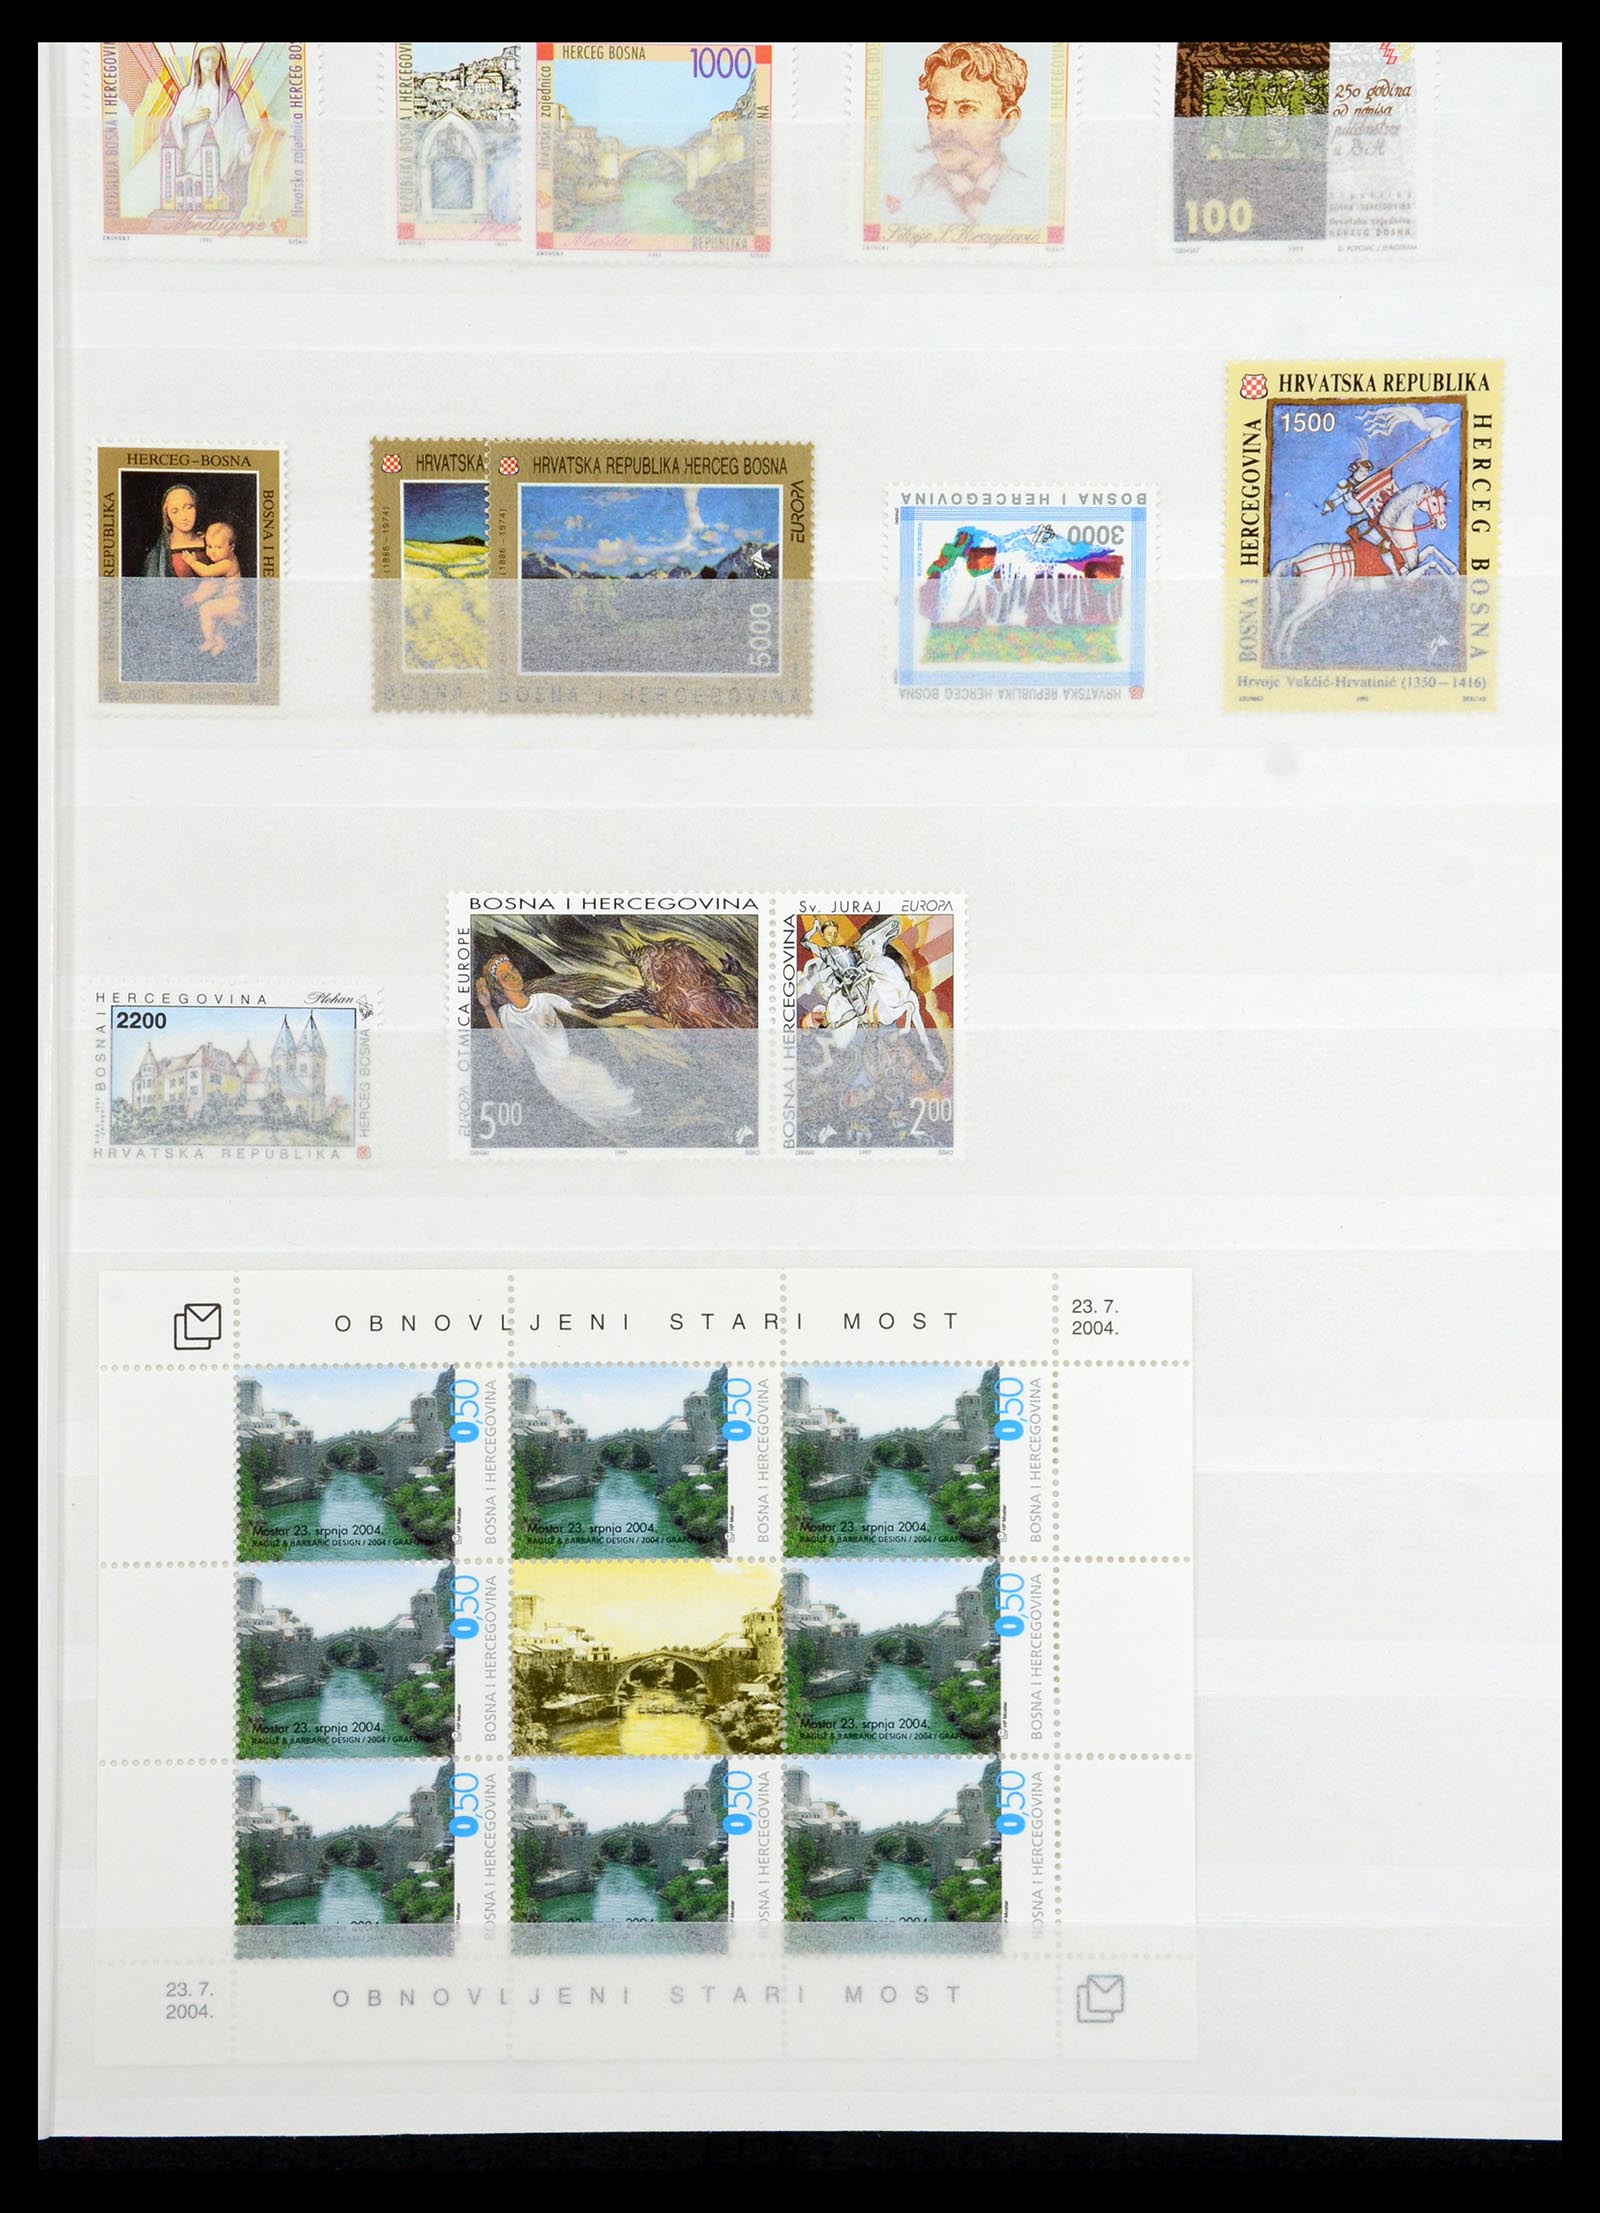 36461 059 - Stamp collection 36461 Slovenia, Croatia and Bosnia-Herzegovina MNH 1991